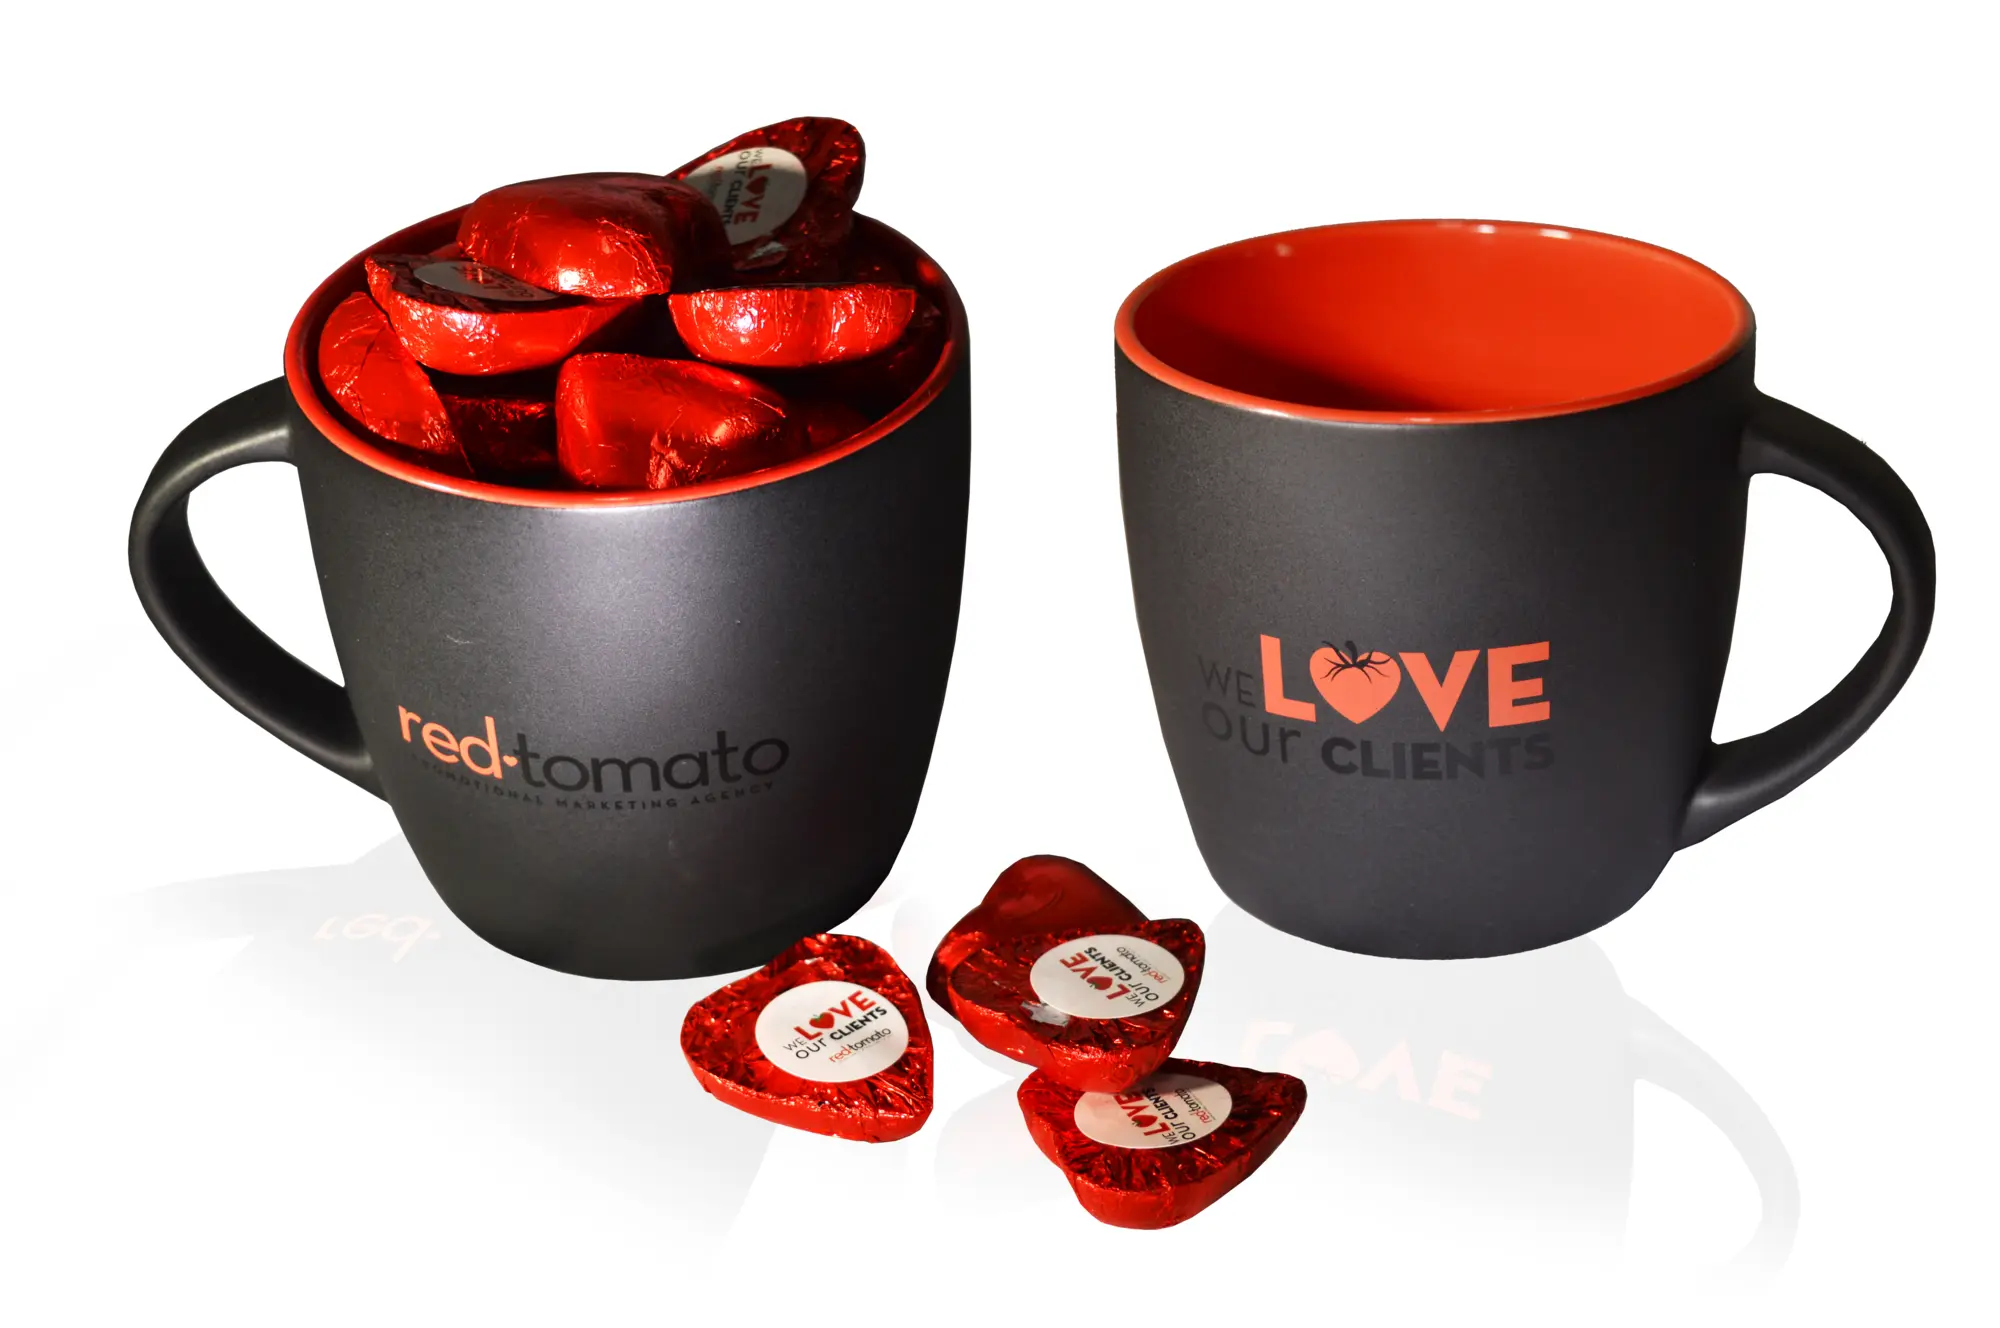 Red Tomato mug merchandise